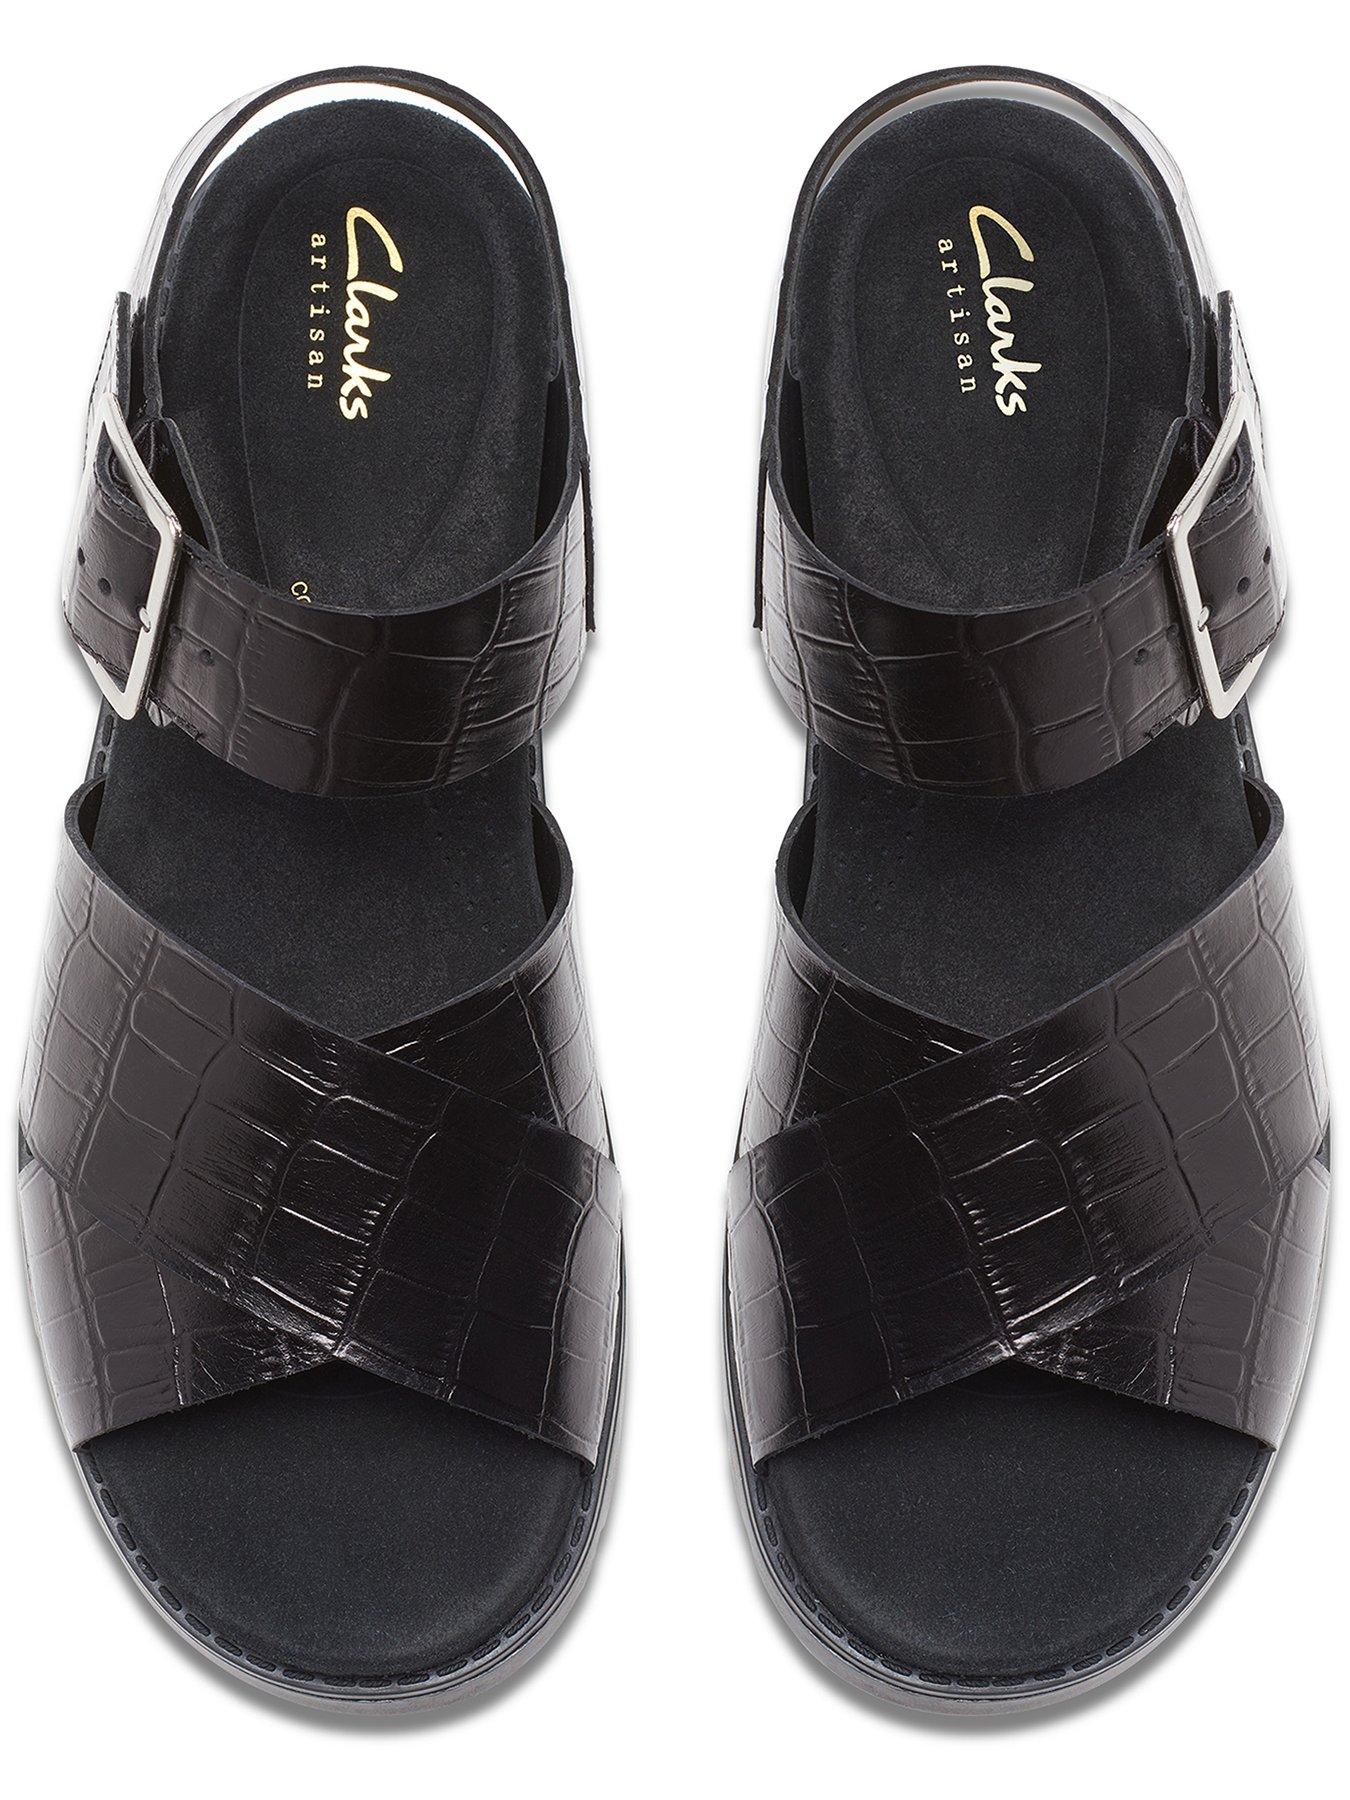 Clarks Orinoco Cross Front Buckle Sandals - Black | Very.co.uk